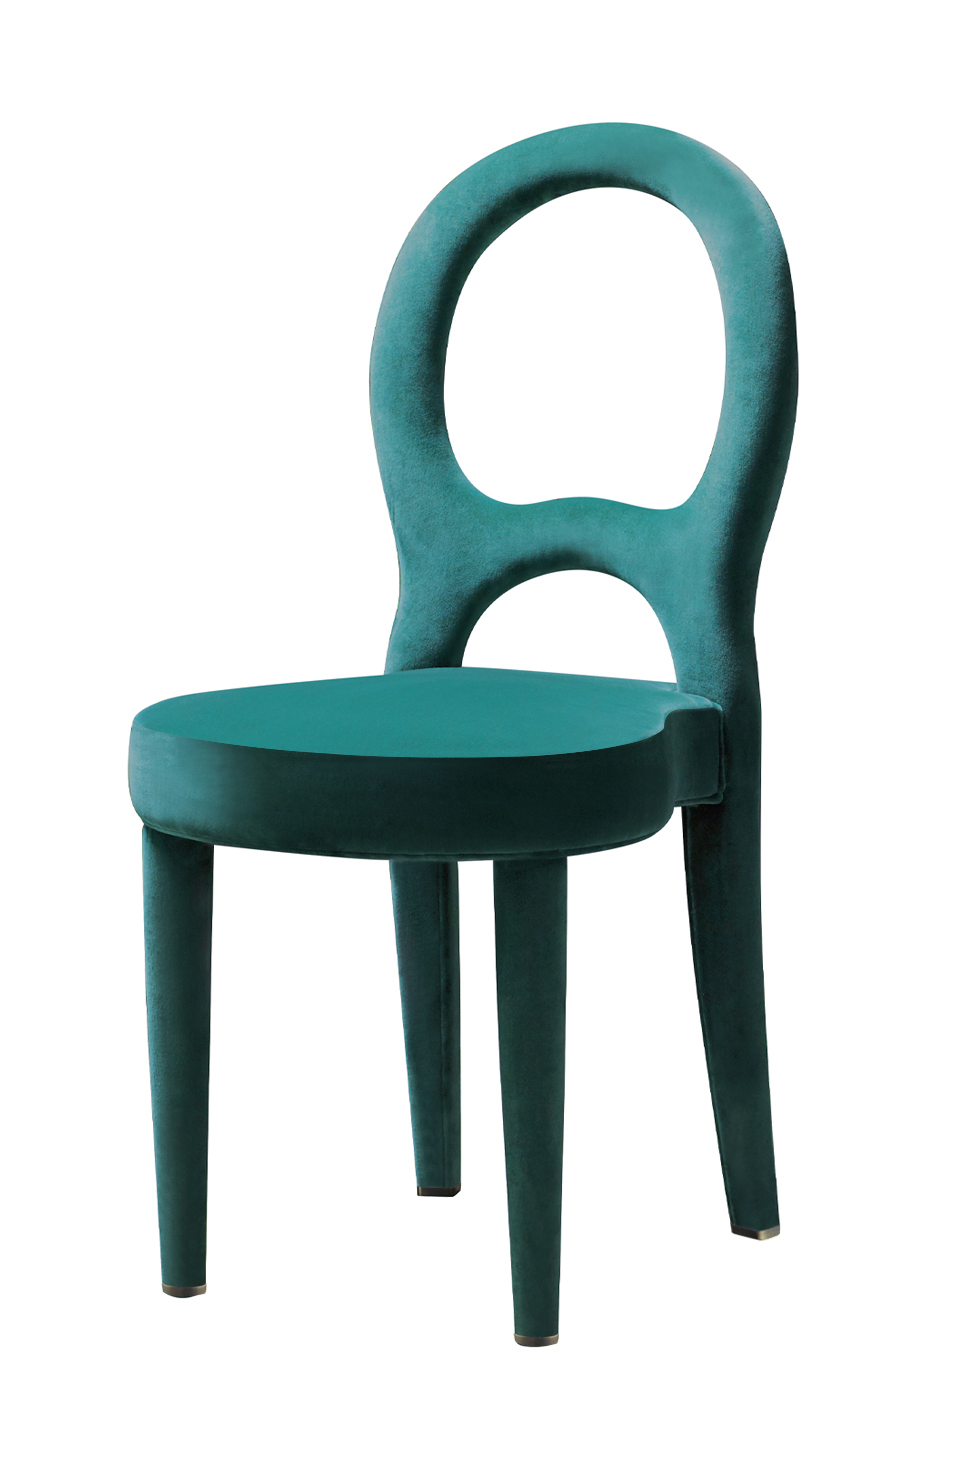 Bilou Bilou餐椅以天鹅绒和亚麻织物或纳帕皮包衬，备有不同颜色和不同尺寸（标准、大号和儿童版）可供选择。Bilou Bilou是Promemoria产品目录中最经典的餐椅| Promemoria